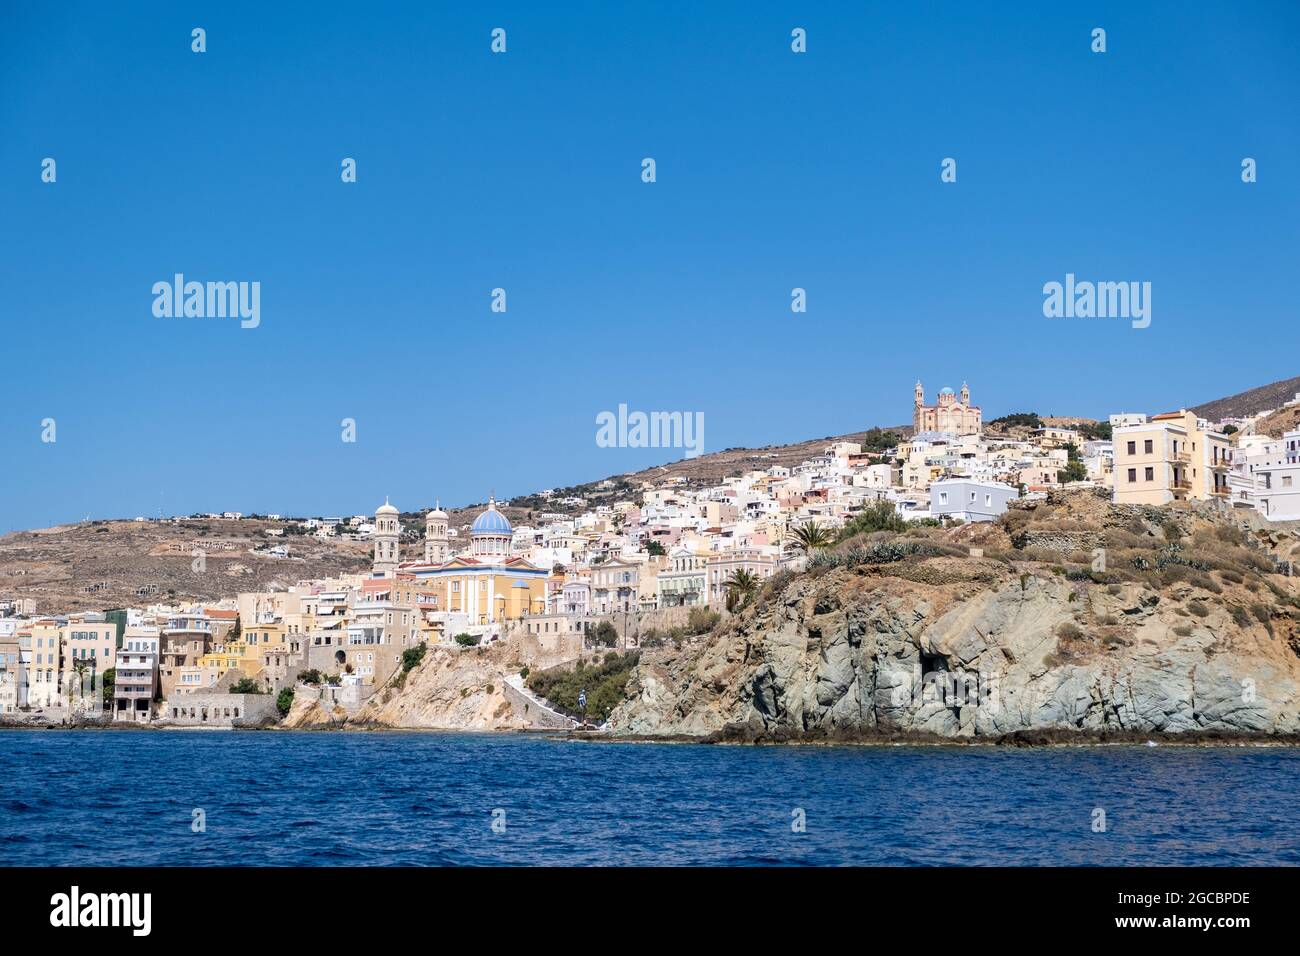 Isola di Syros, Cicladi, Grecia. Ermoupolis paesaggio urbano. Edifici tradizionali in collina sul mare. Sole greco mar Egeo, vacanza estiva. Foto Stock